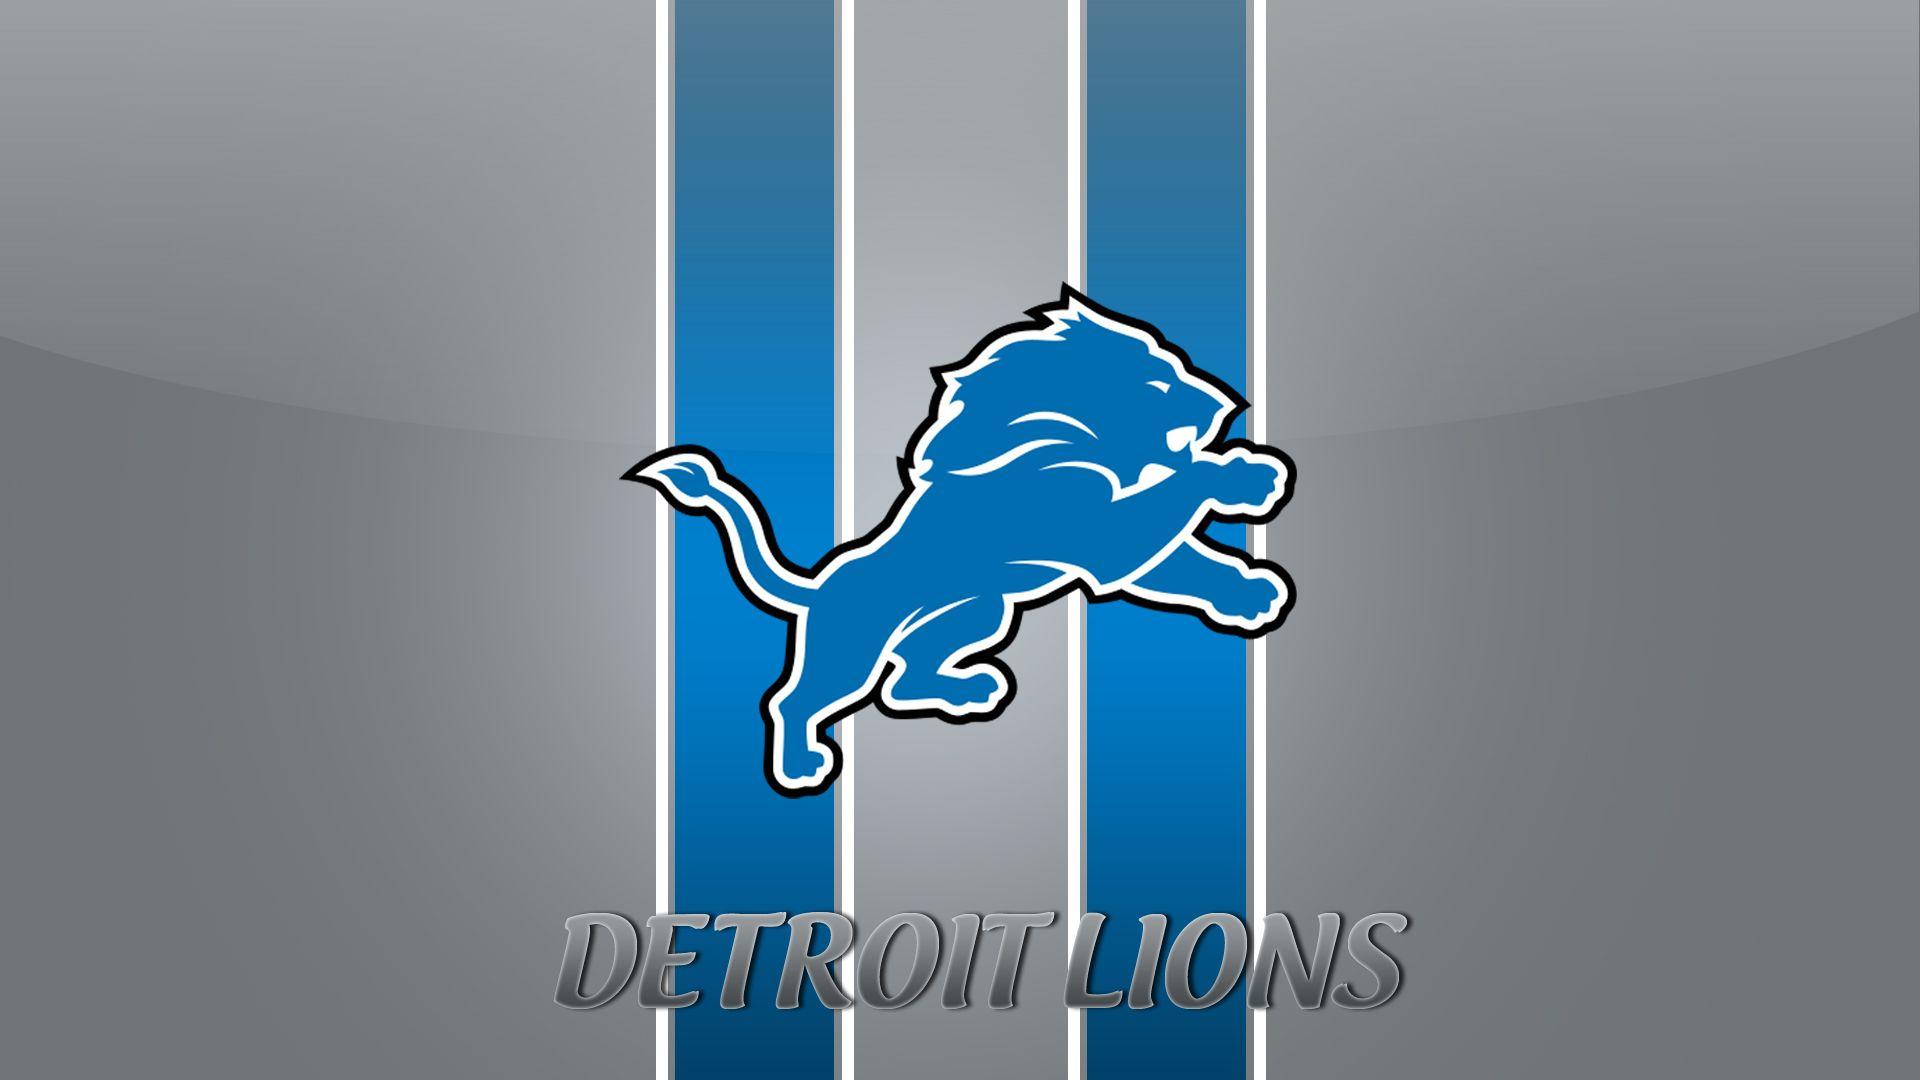 Detroit Lions Wallpaper 14647 1920x1080 px